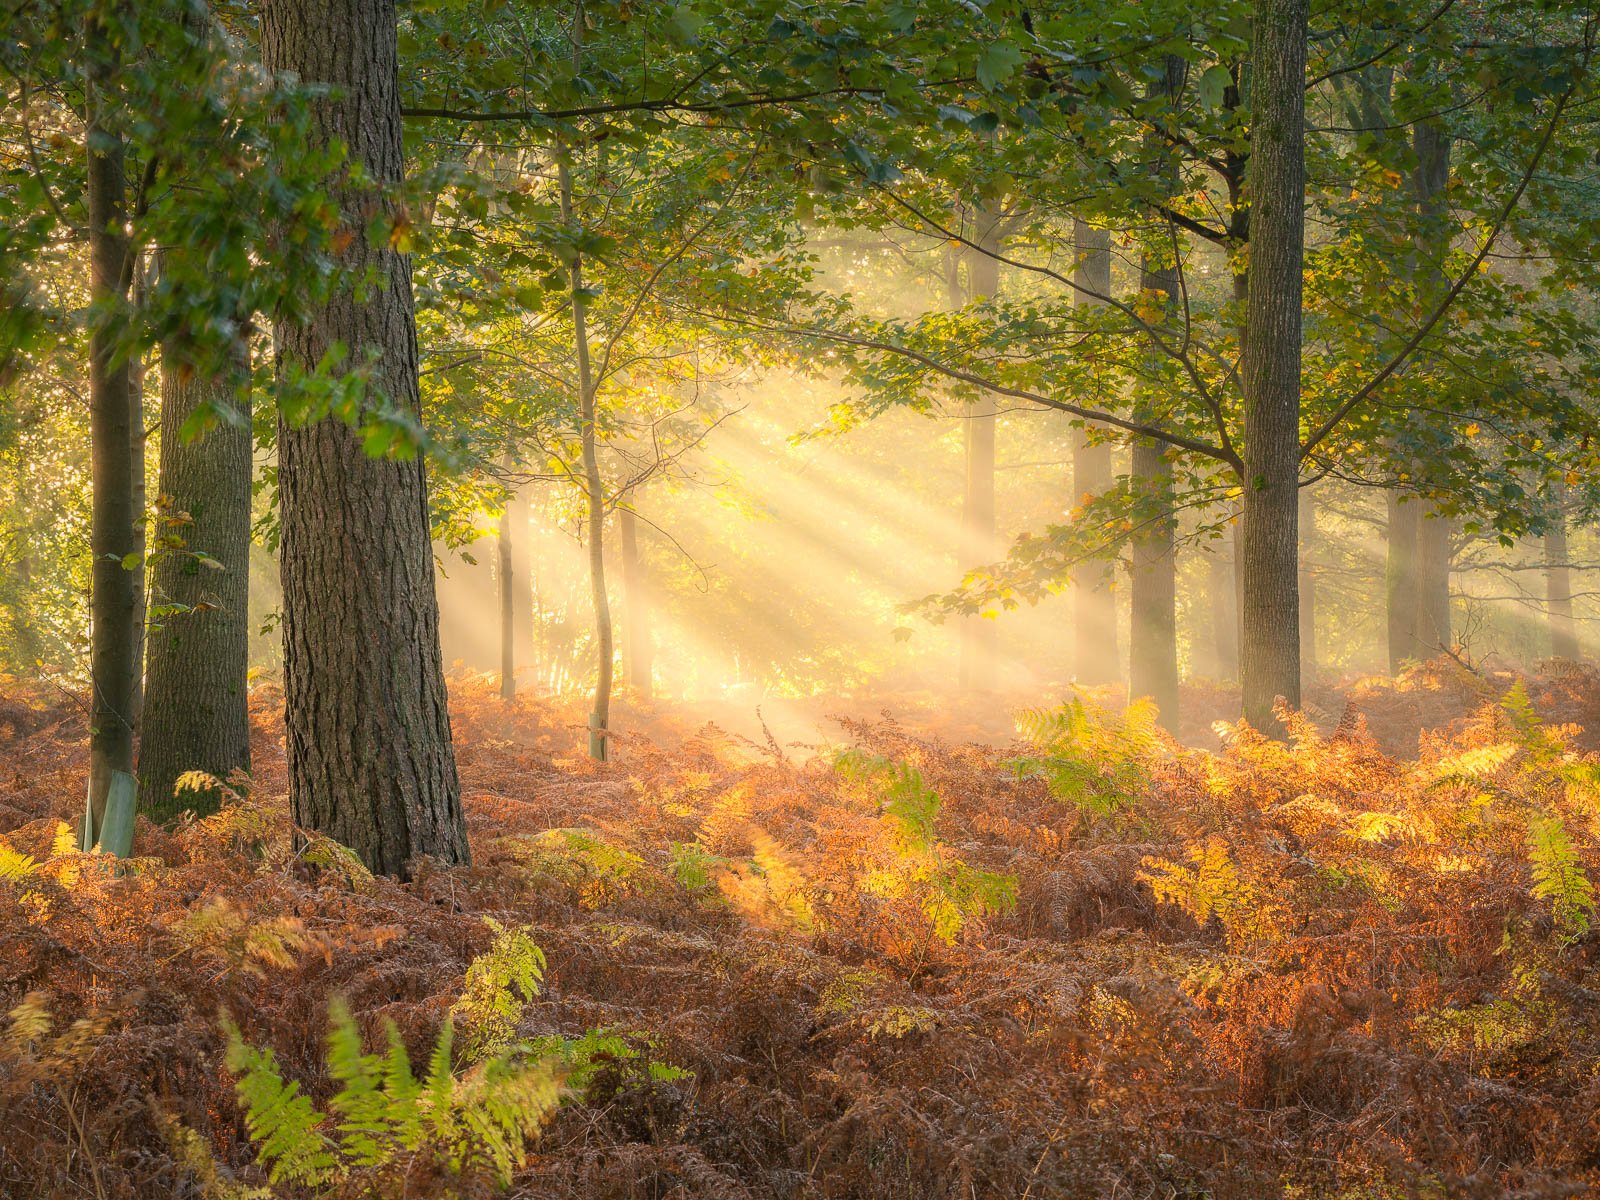 Lost in an Autumn Wonderland - Dorset Woodland (Copy)